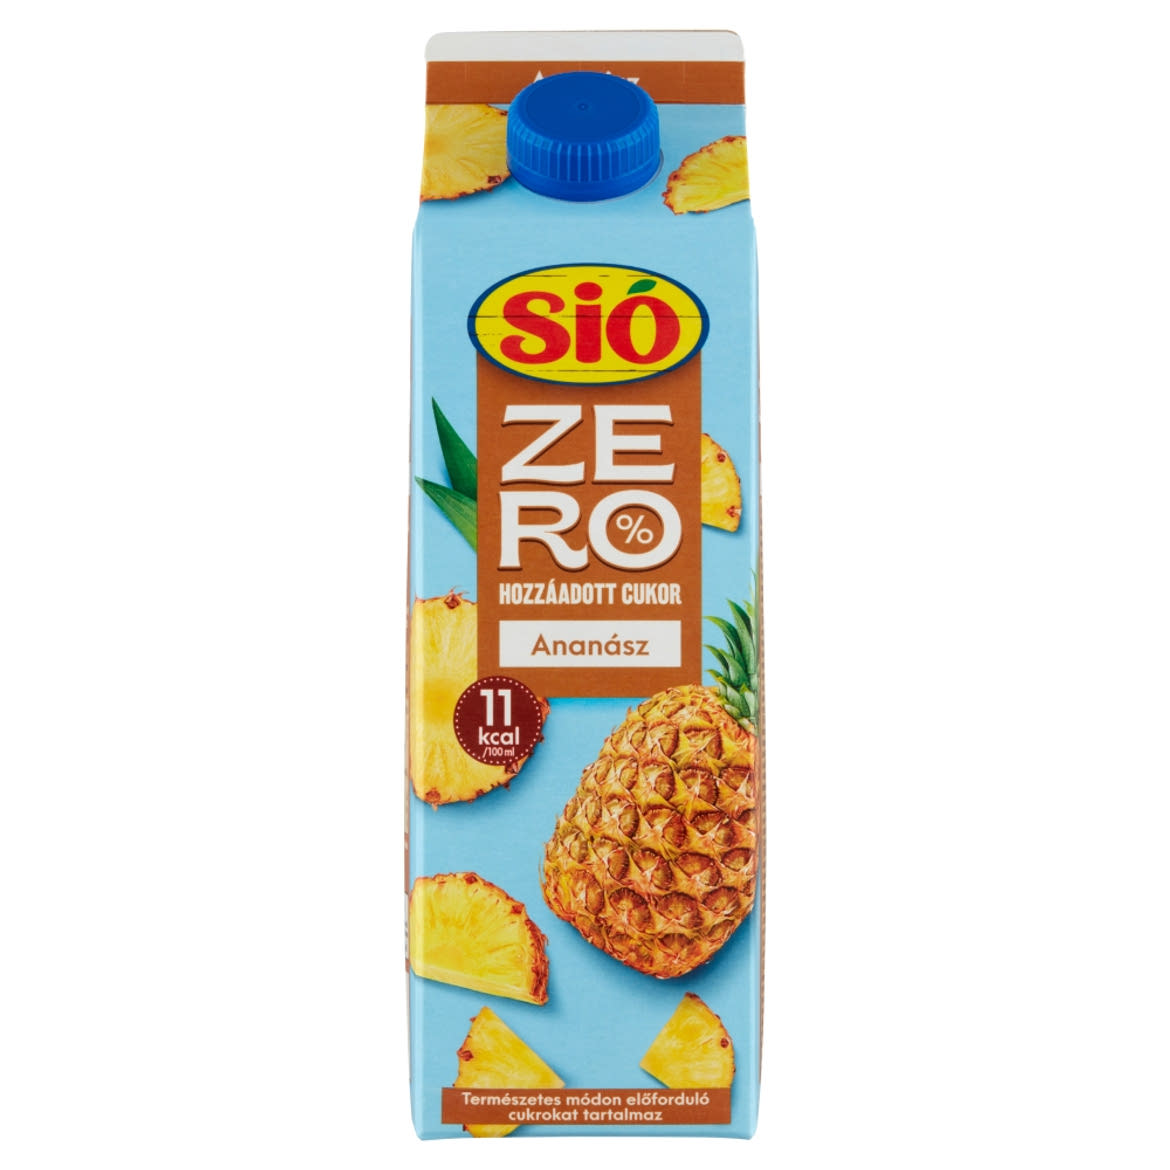 Sió Zero édesítőszerekkel készült ananász gyümölcsital